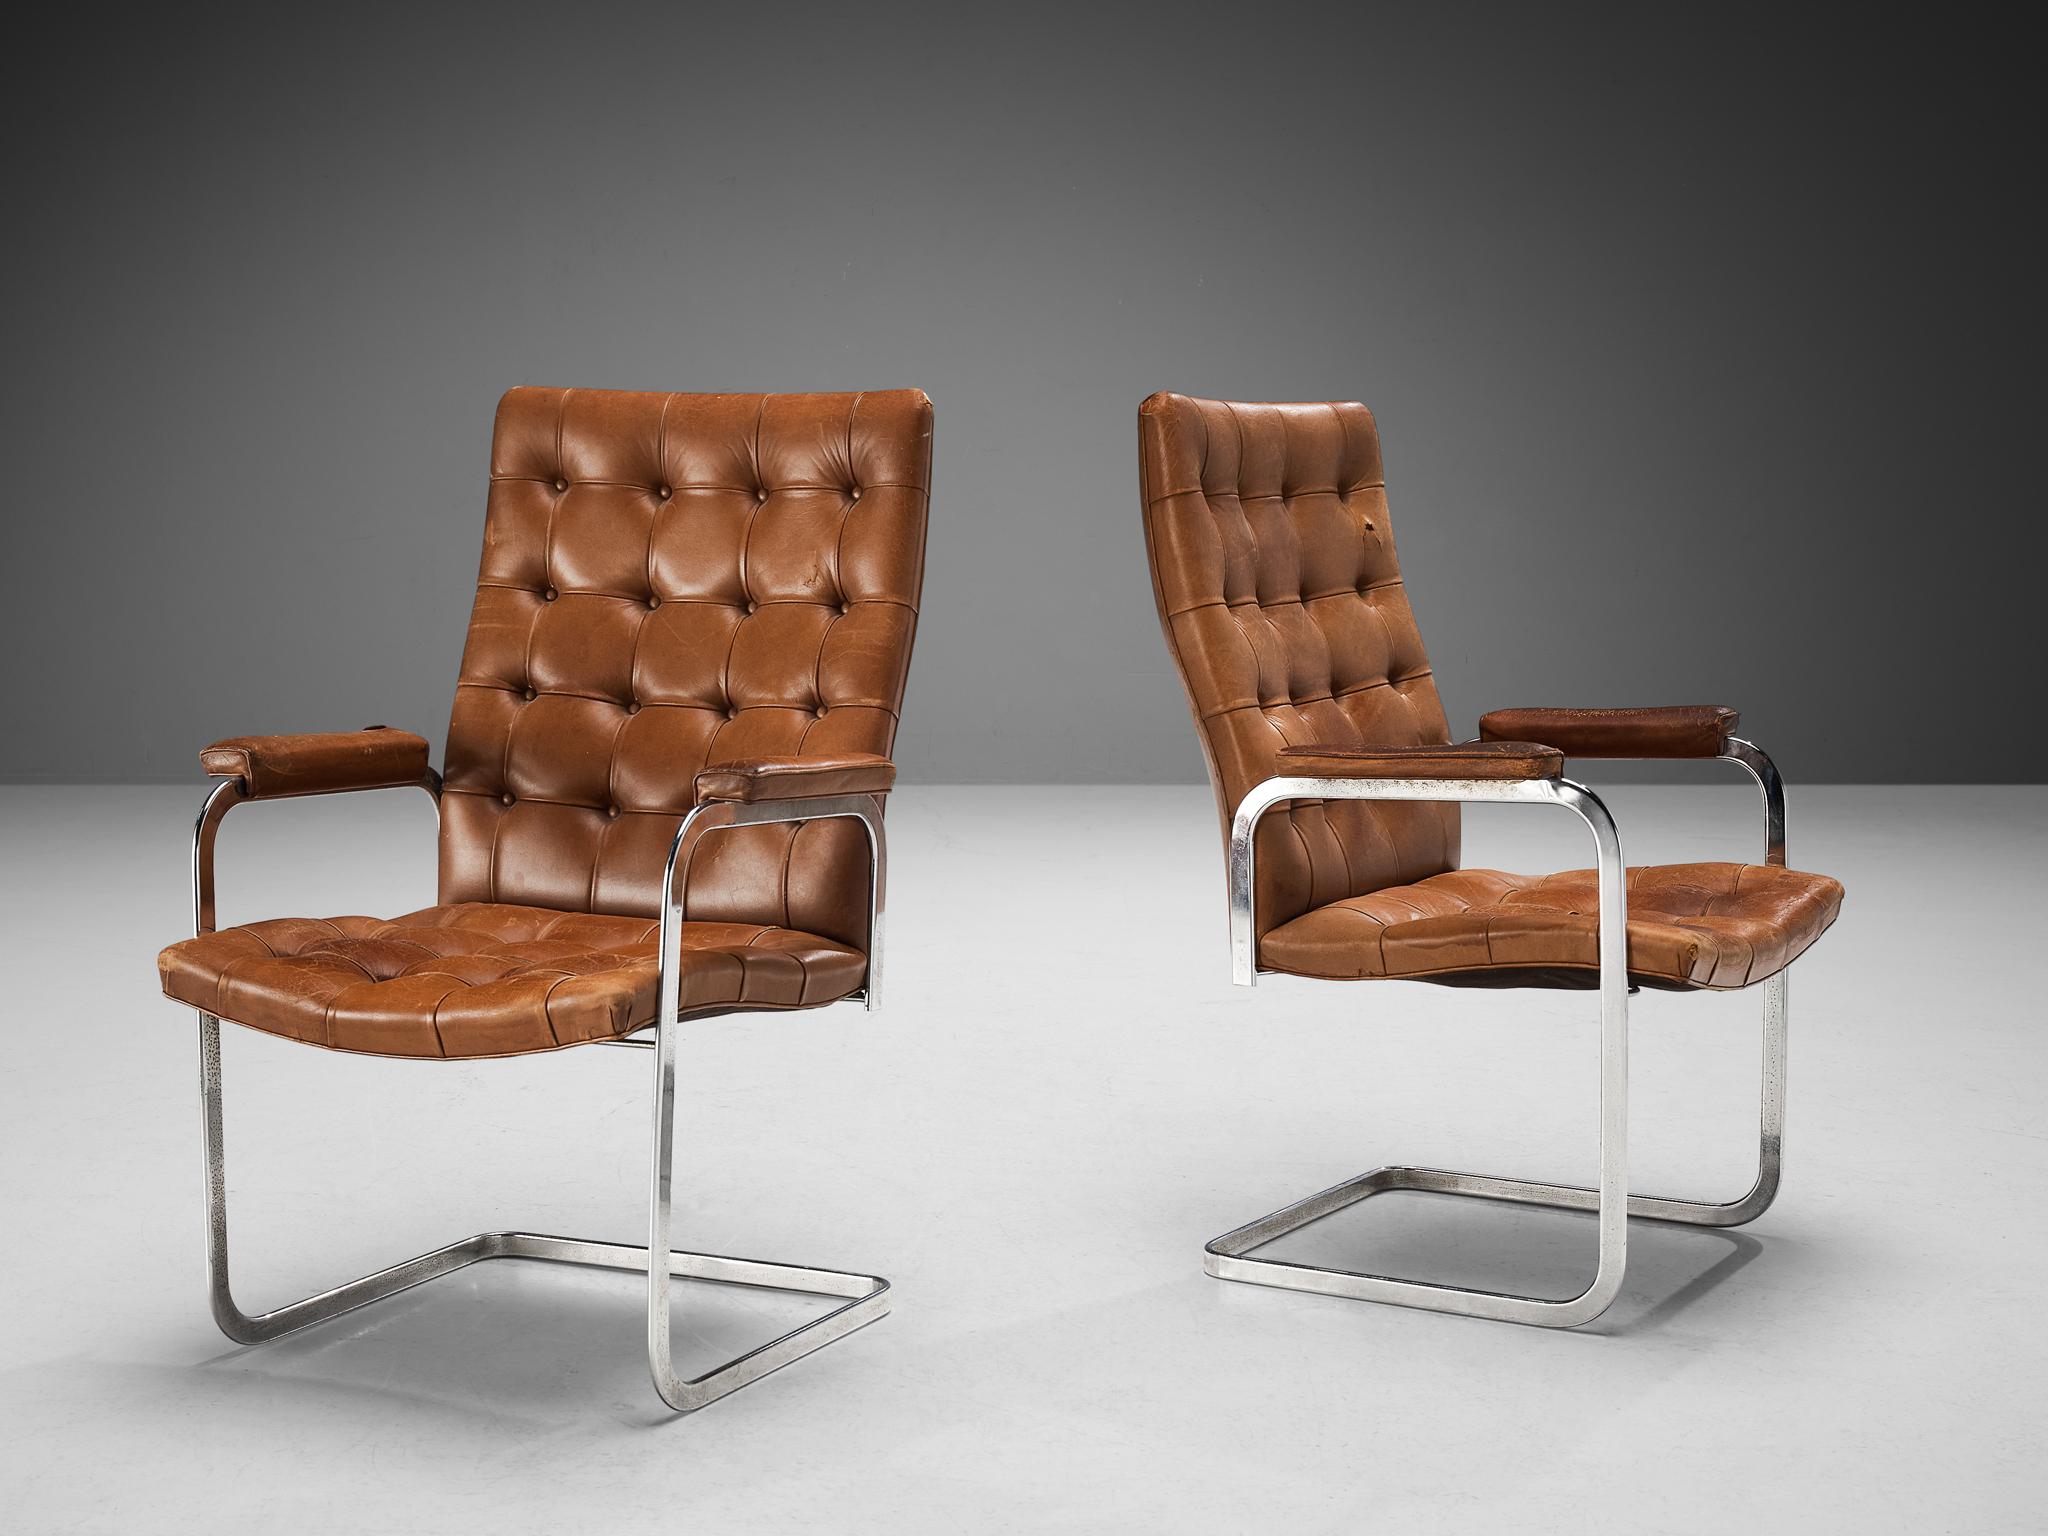 Robert Haussmann für De Sede, Sesselpaar, Modell 'RH-304', Leder und Stahl, Schweiz, um 1950. 

Dieses freitragende Paar getufteter Stühle mit ledergepolsterten Armlehnen ist ein Entwurf von Robert Haussmann für De Sede. Das Set zeichnet sich durch